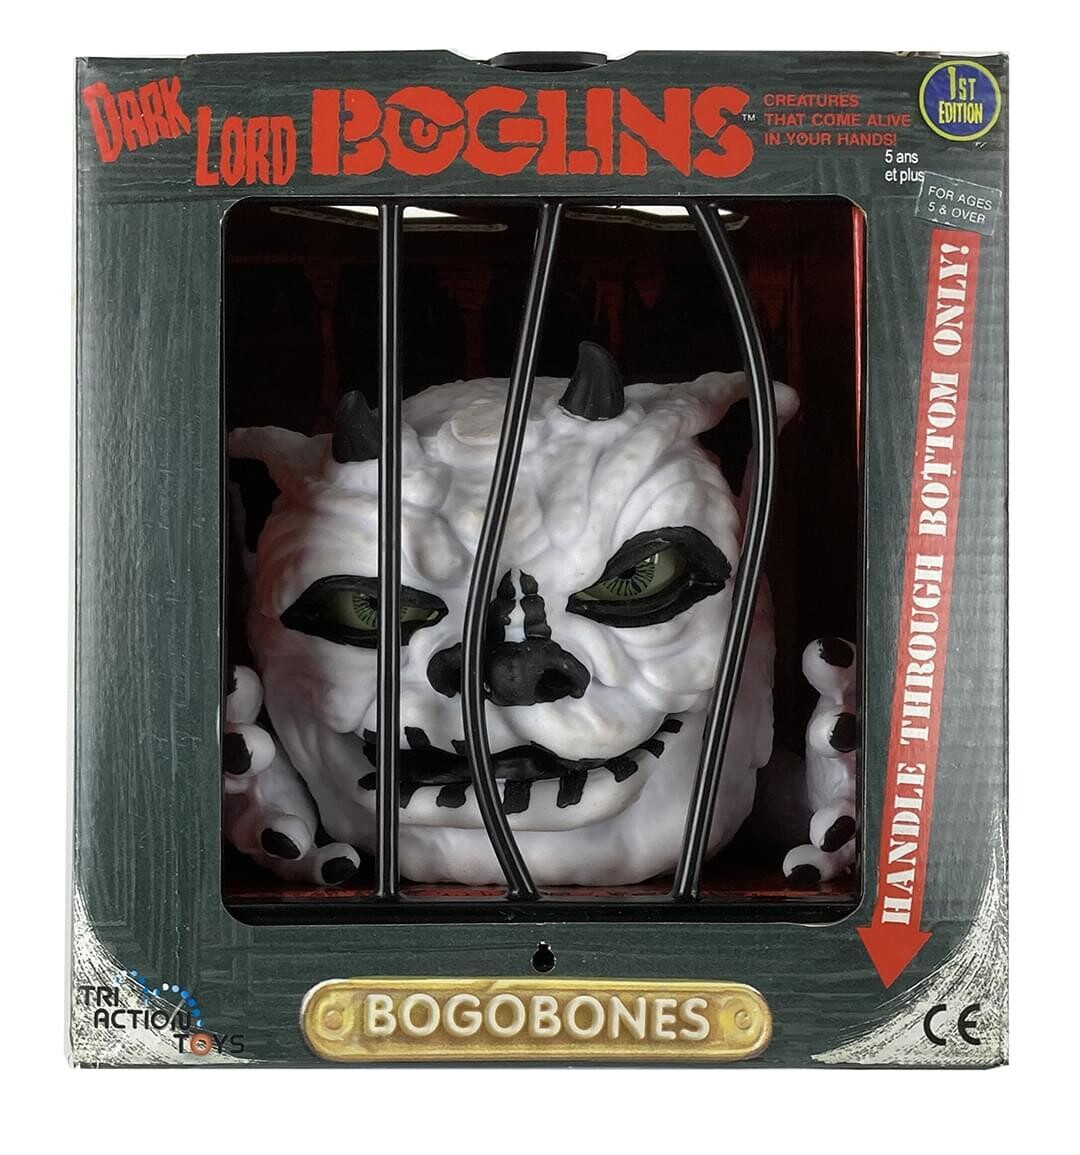 Boglins Bogobones